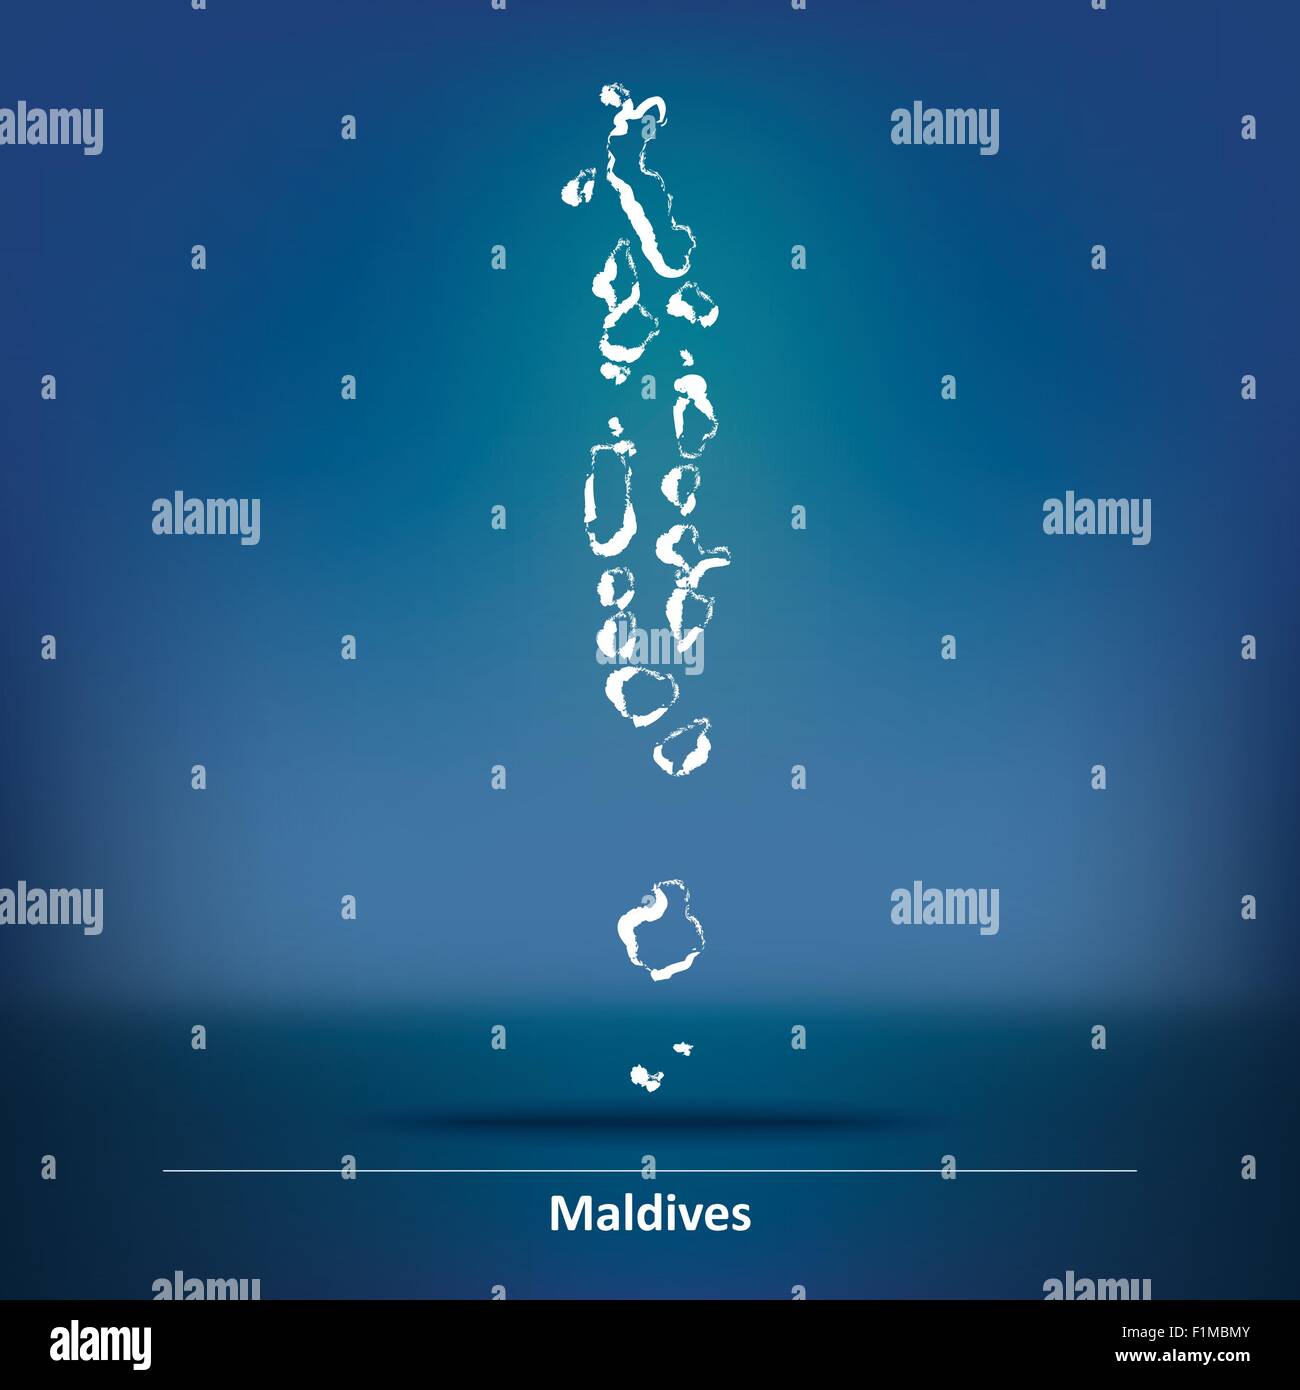 Karte von Malediven - Vektor-Illustration Doodle Stock Vektor